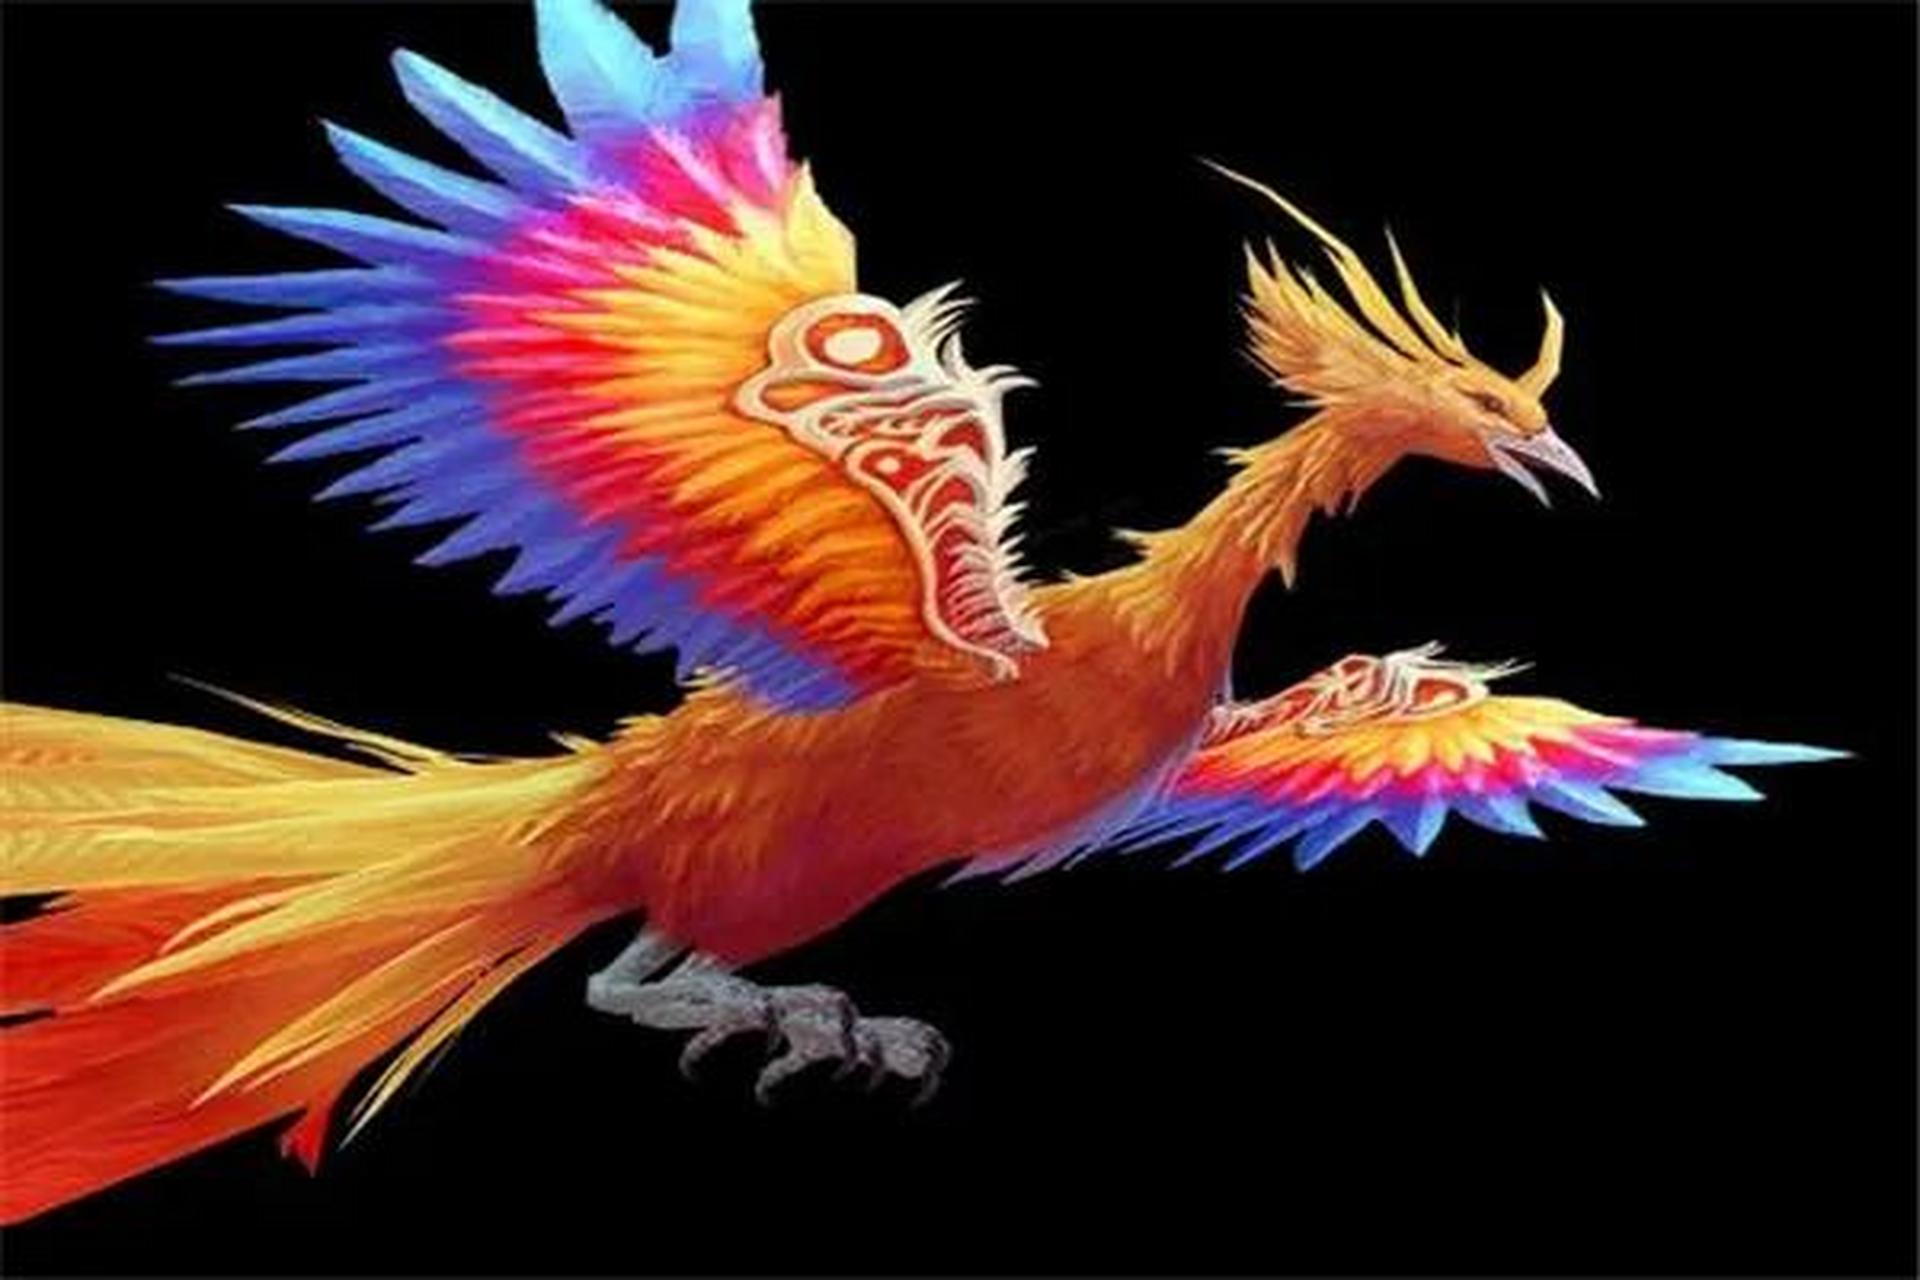 (故事,出自山海经) 在《山海经》中,凤凰是一种异兽,它身体火红,羽毛